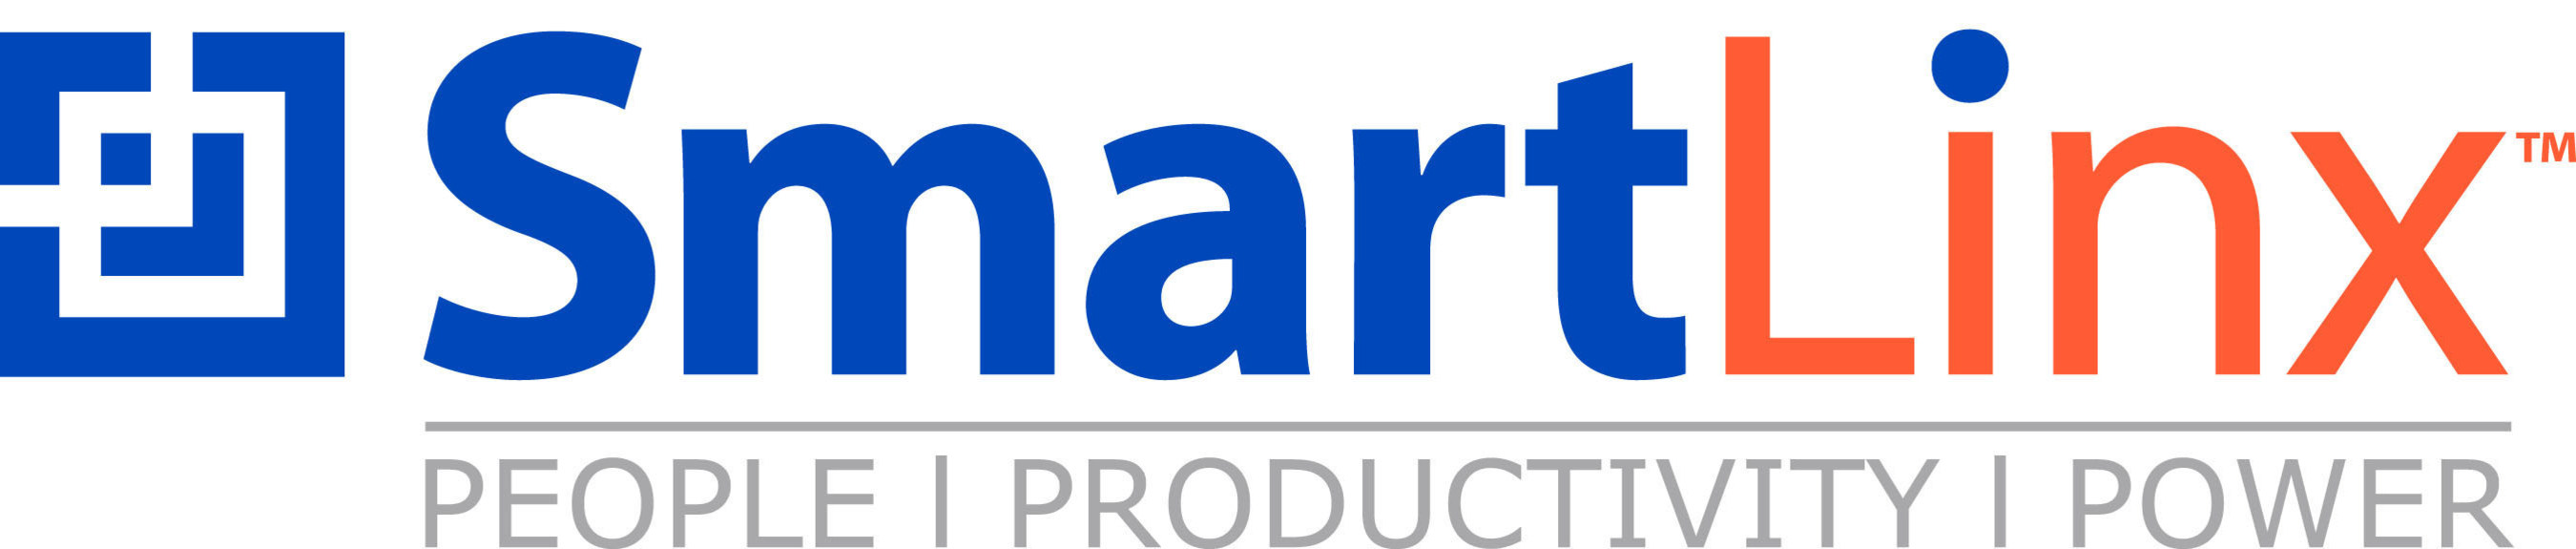 SmartLinx Solutions logo